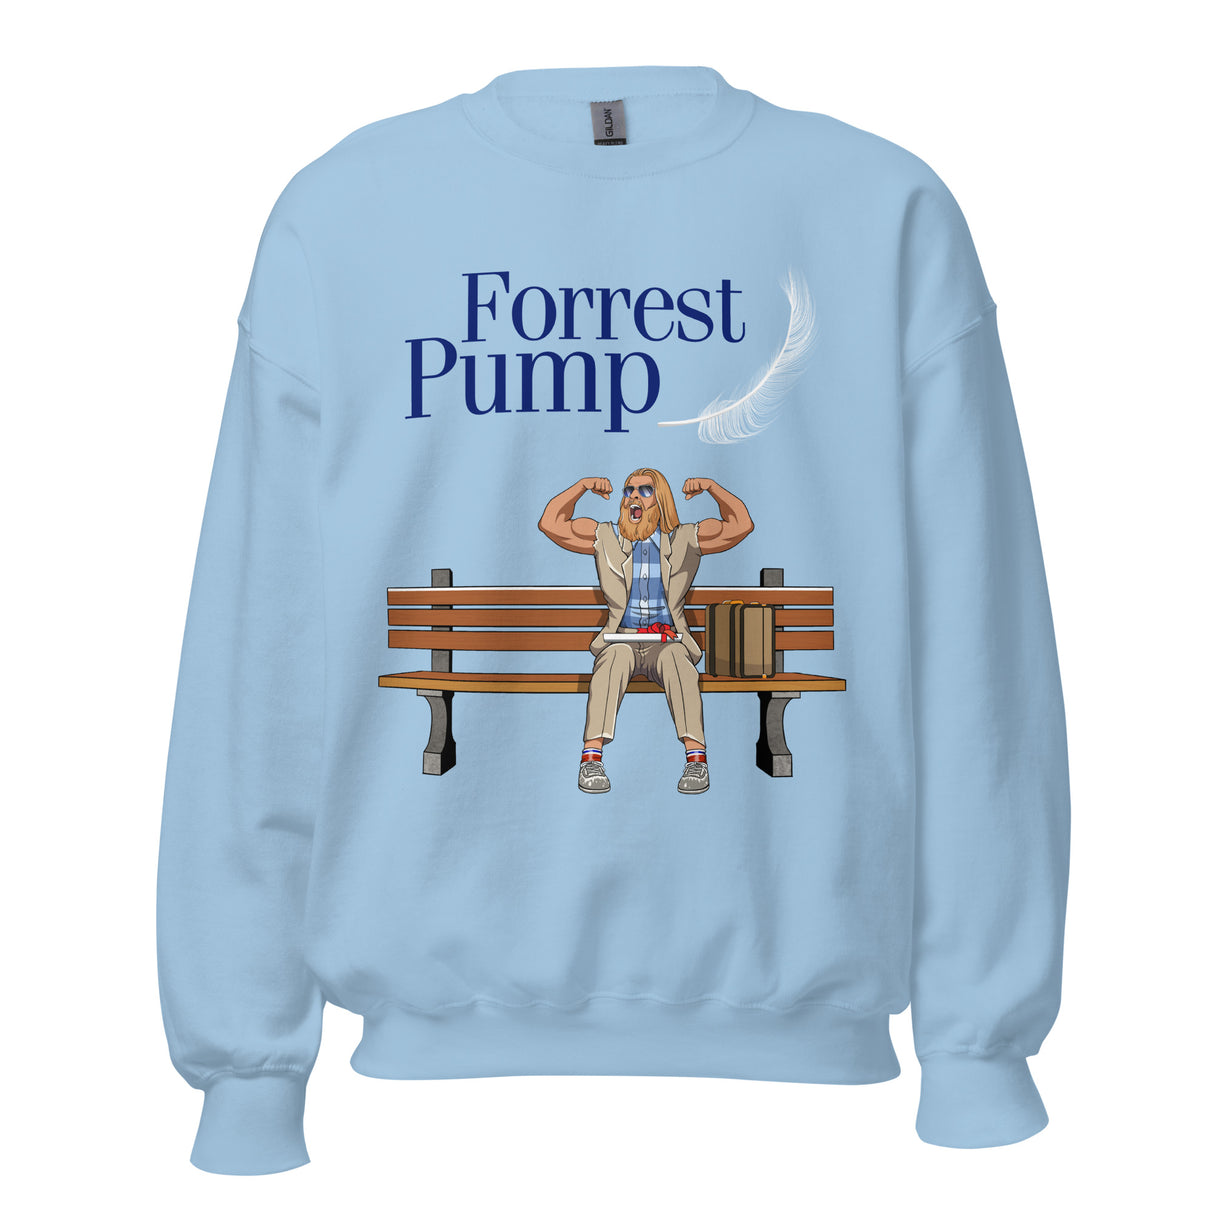 Forrest Pump (Dark Text) Sweatshirt